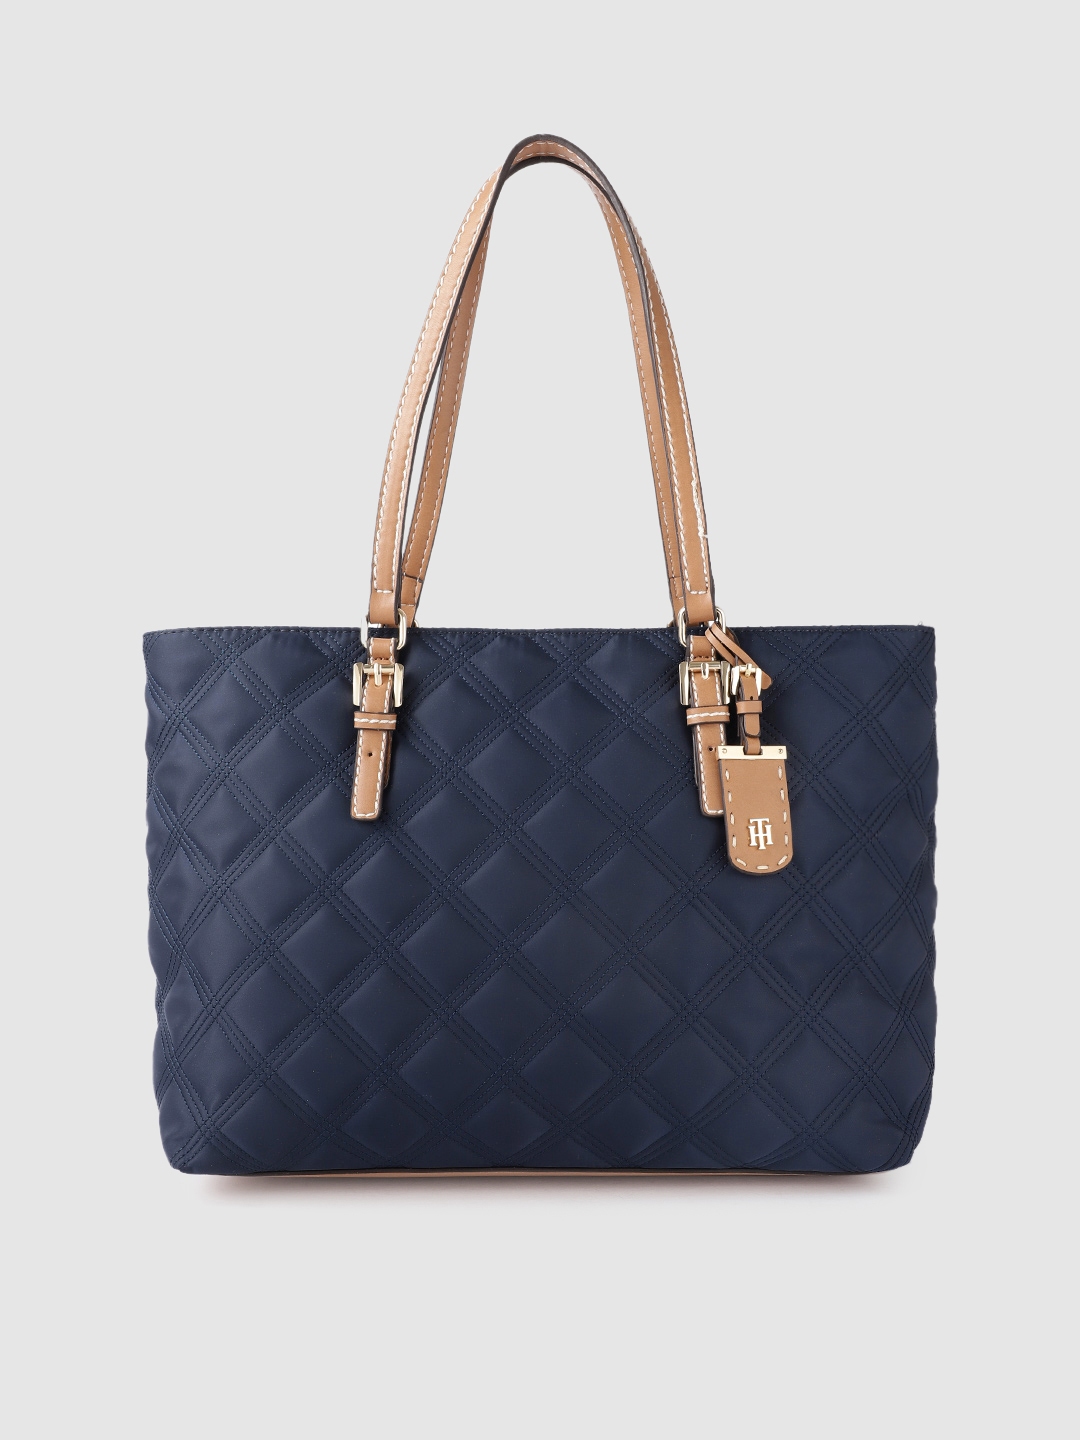 Buy Tommy Hilfiger Navy Blue Quilted Shoulder Bag - Handbags for Women